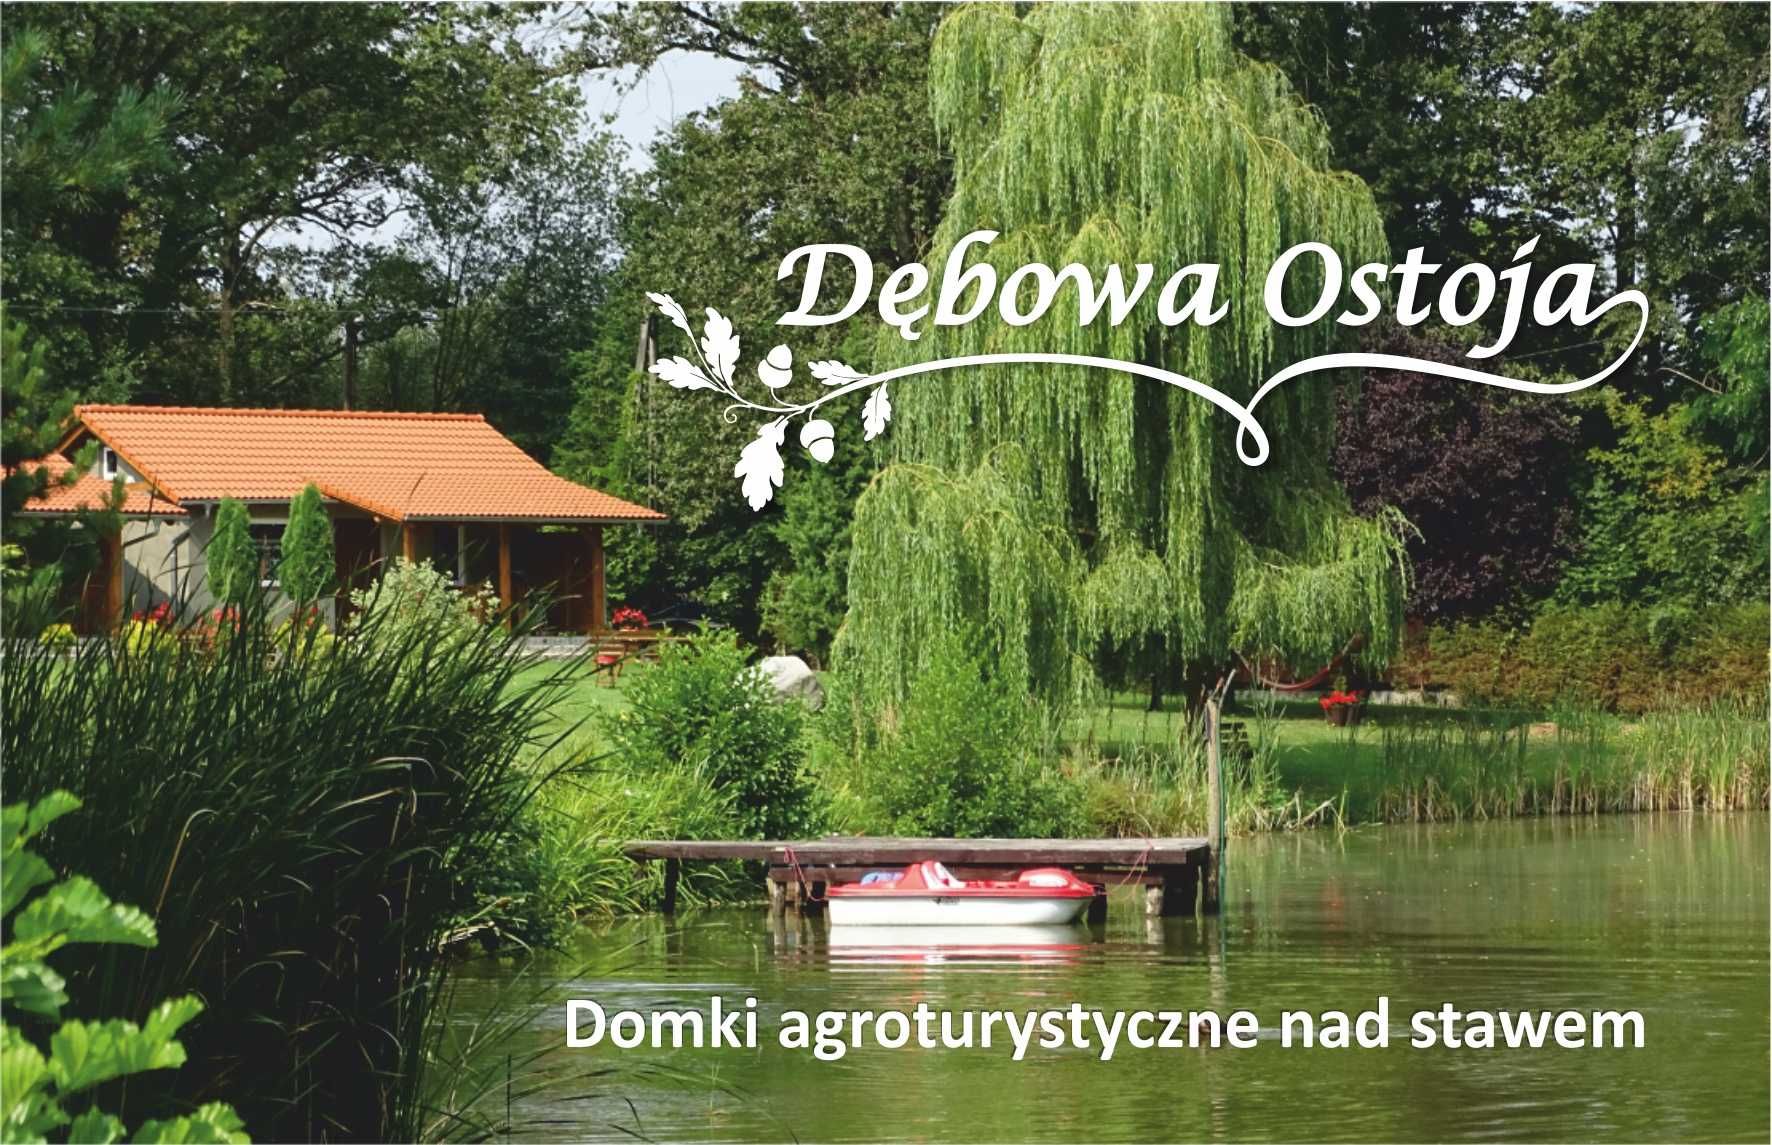 Dębowa Ostoja - Domki agroturystyczne nad stawem